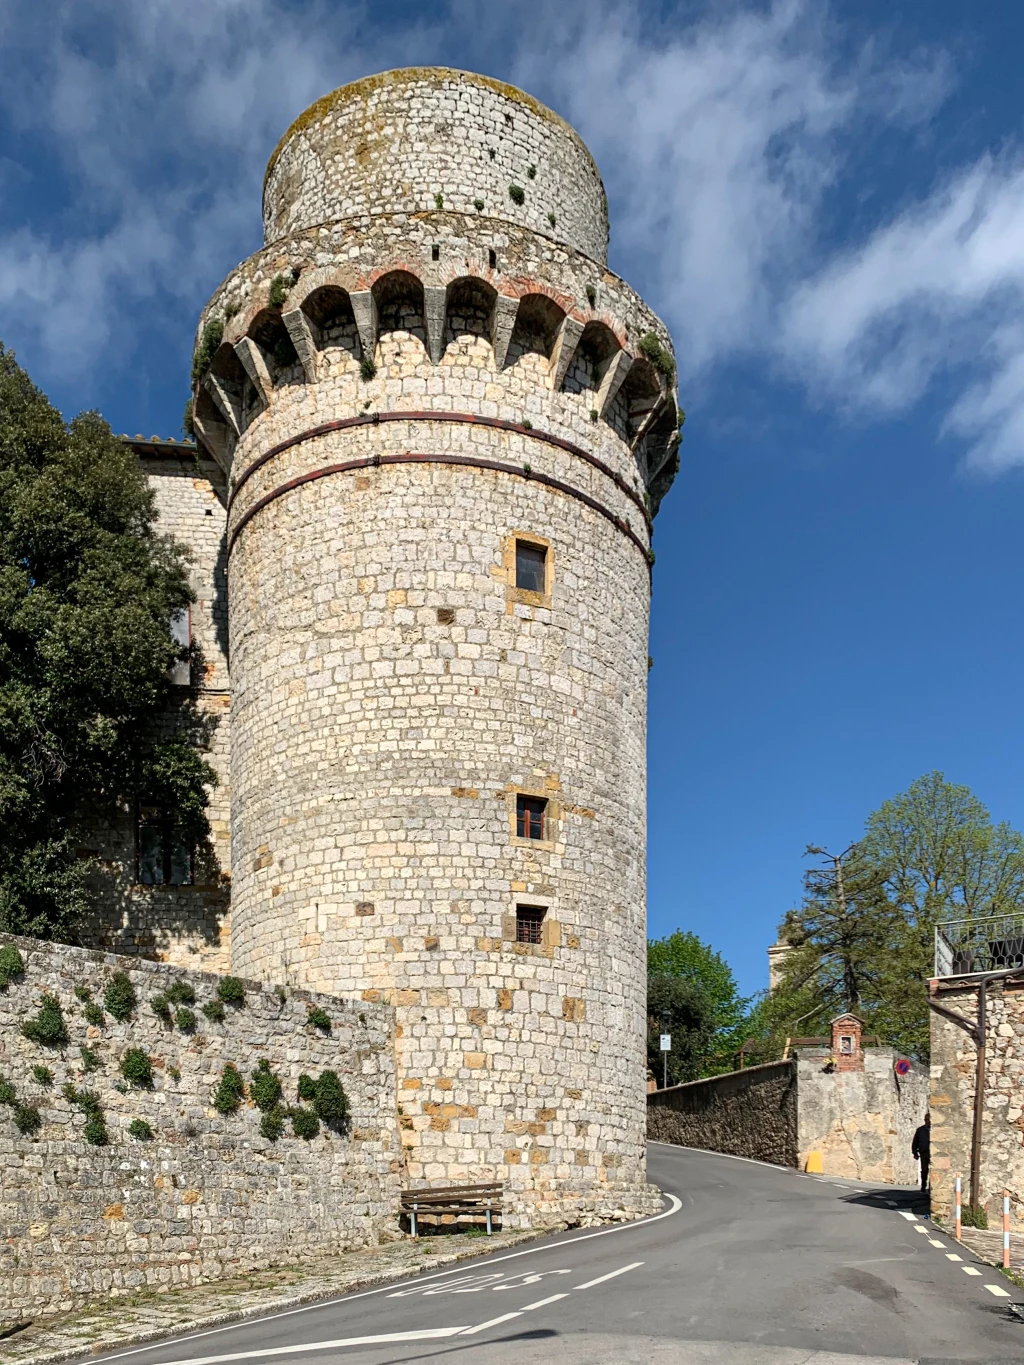 Castle in Historic Village Trequanda, Tuscany, Italia